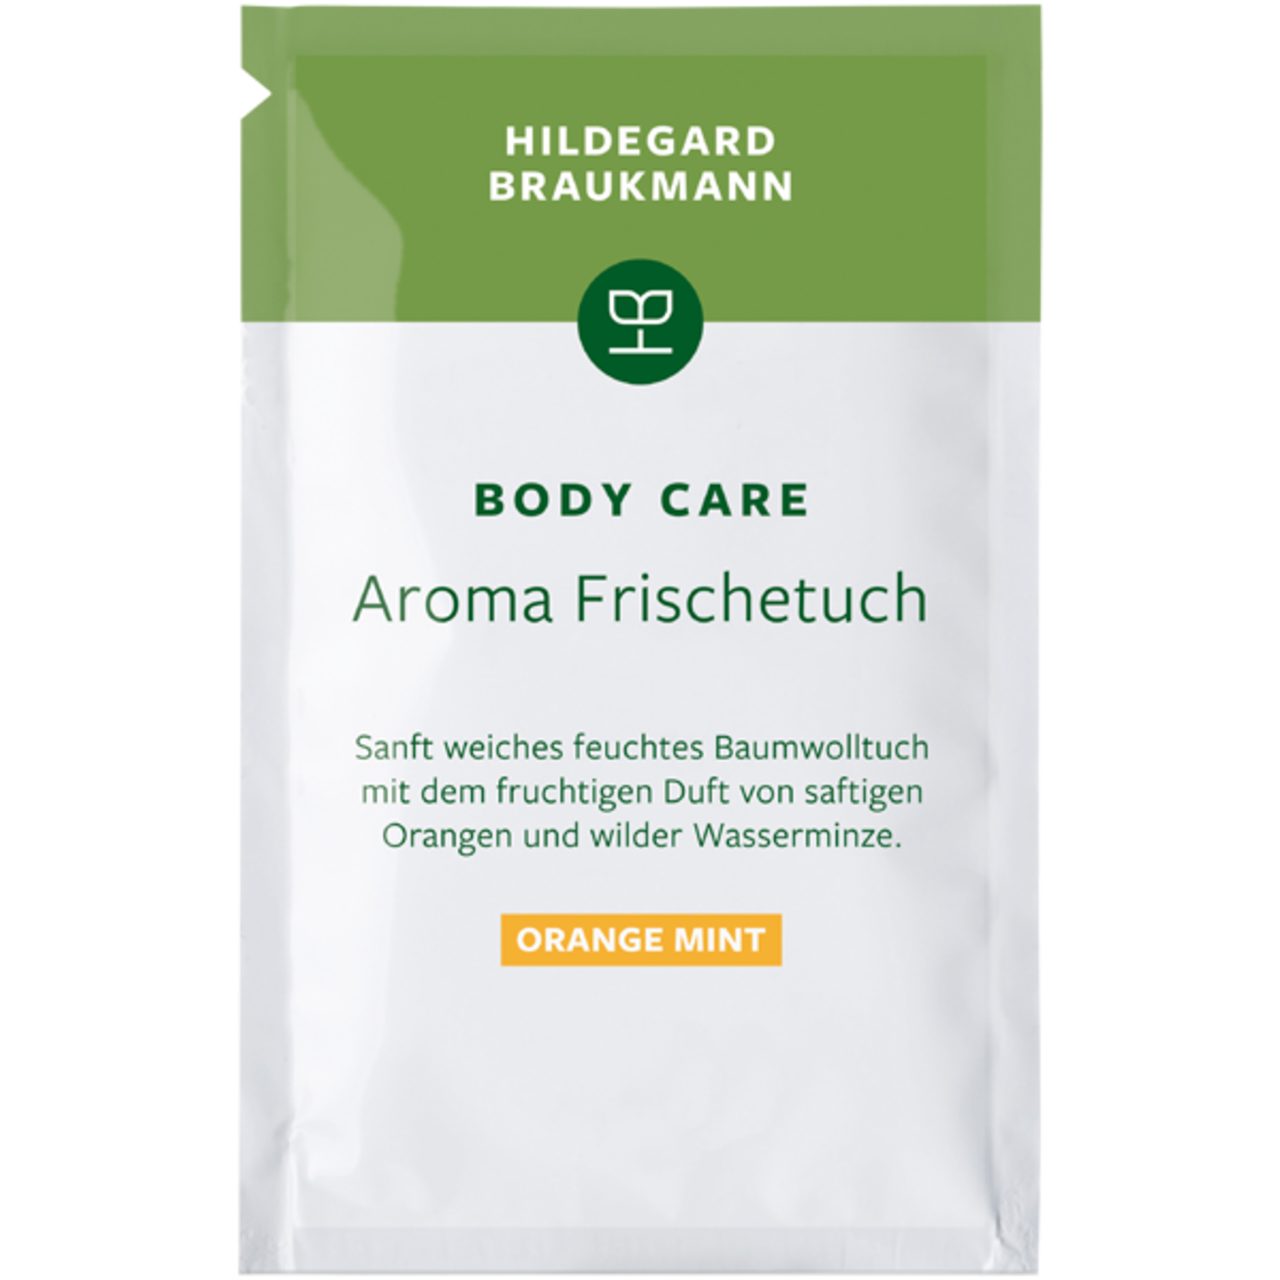 Hildegard Braukmann Make-up Body Care Aroma Frischetücher Orange Mint